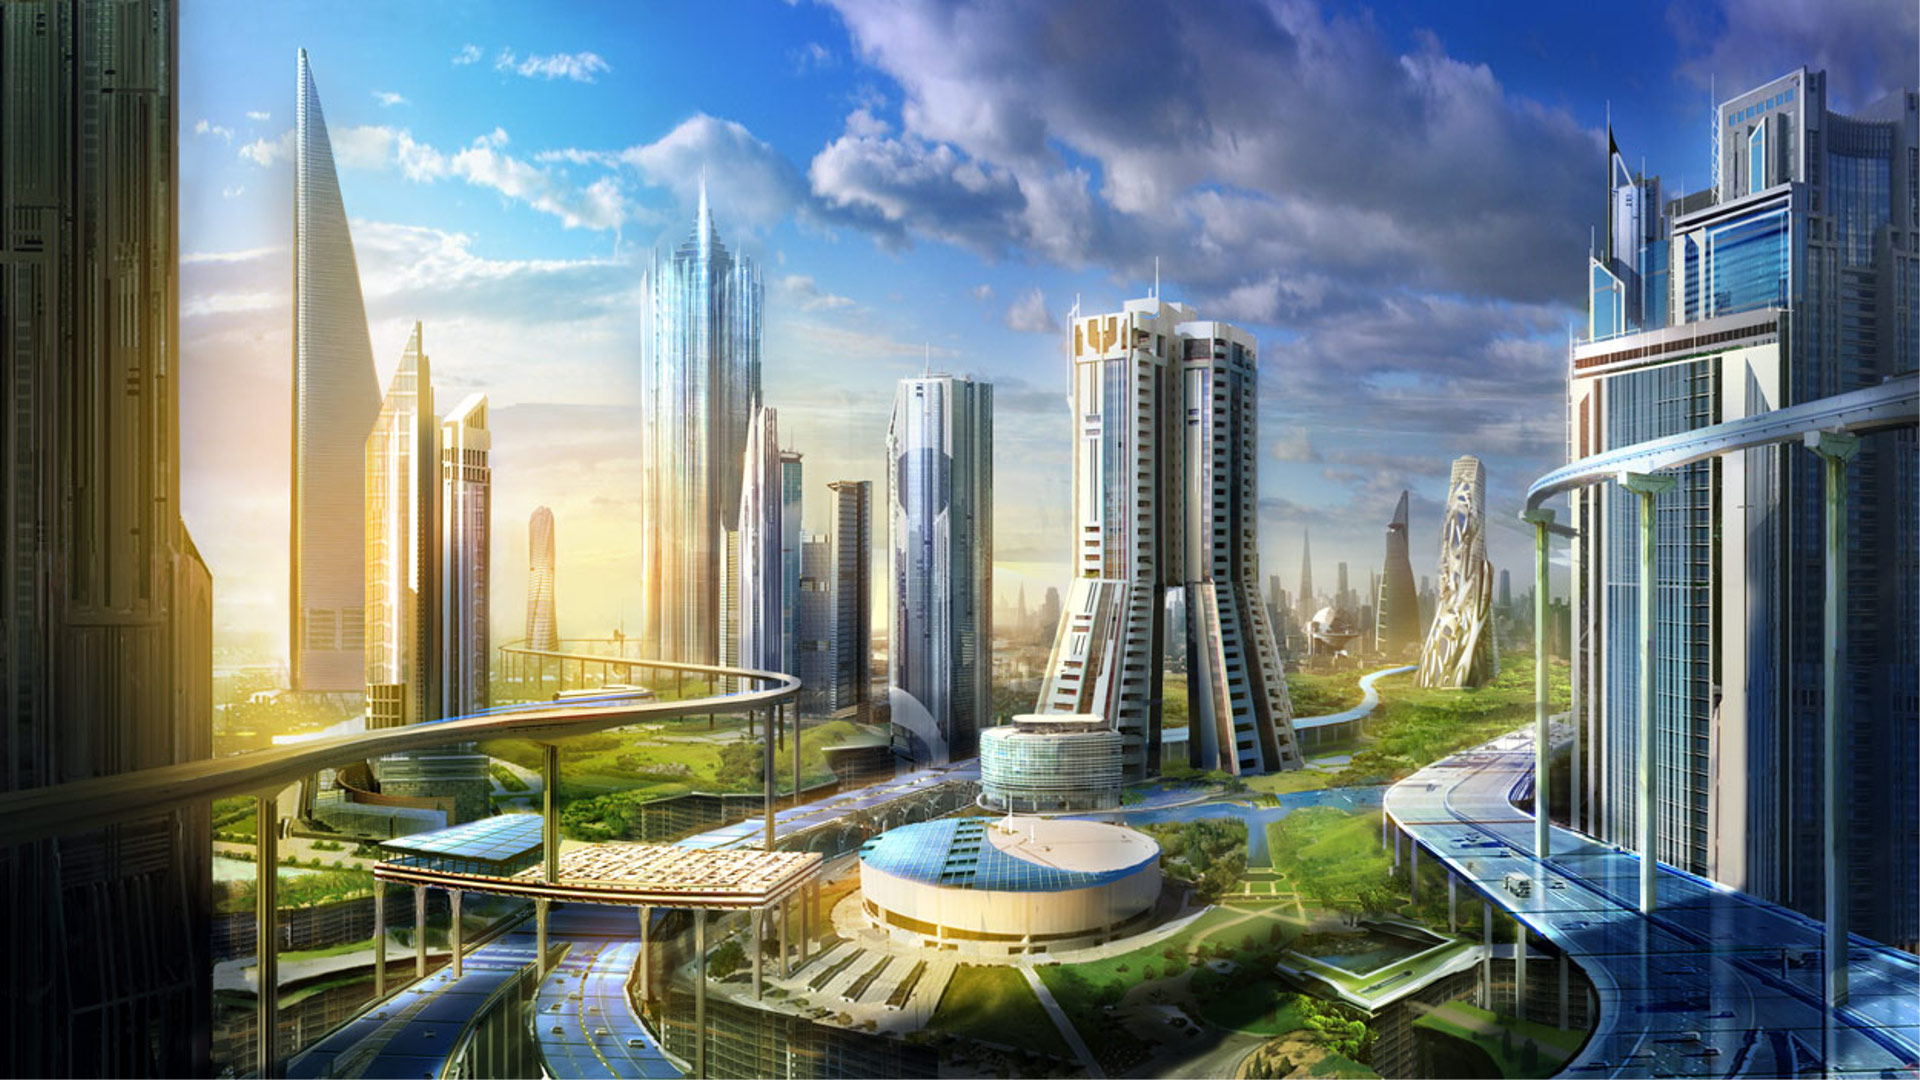 Город будущего в Саудовской Аравии Neom